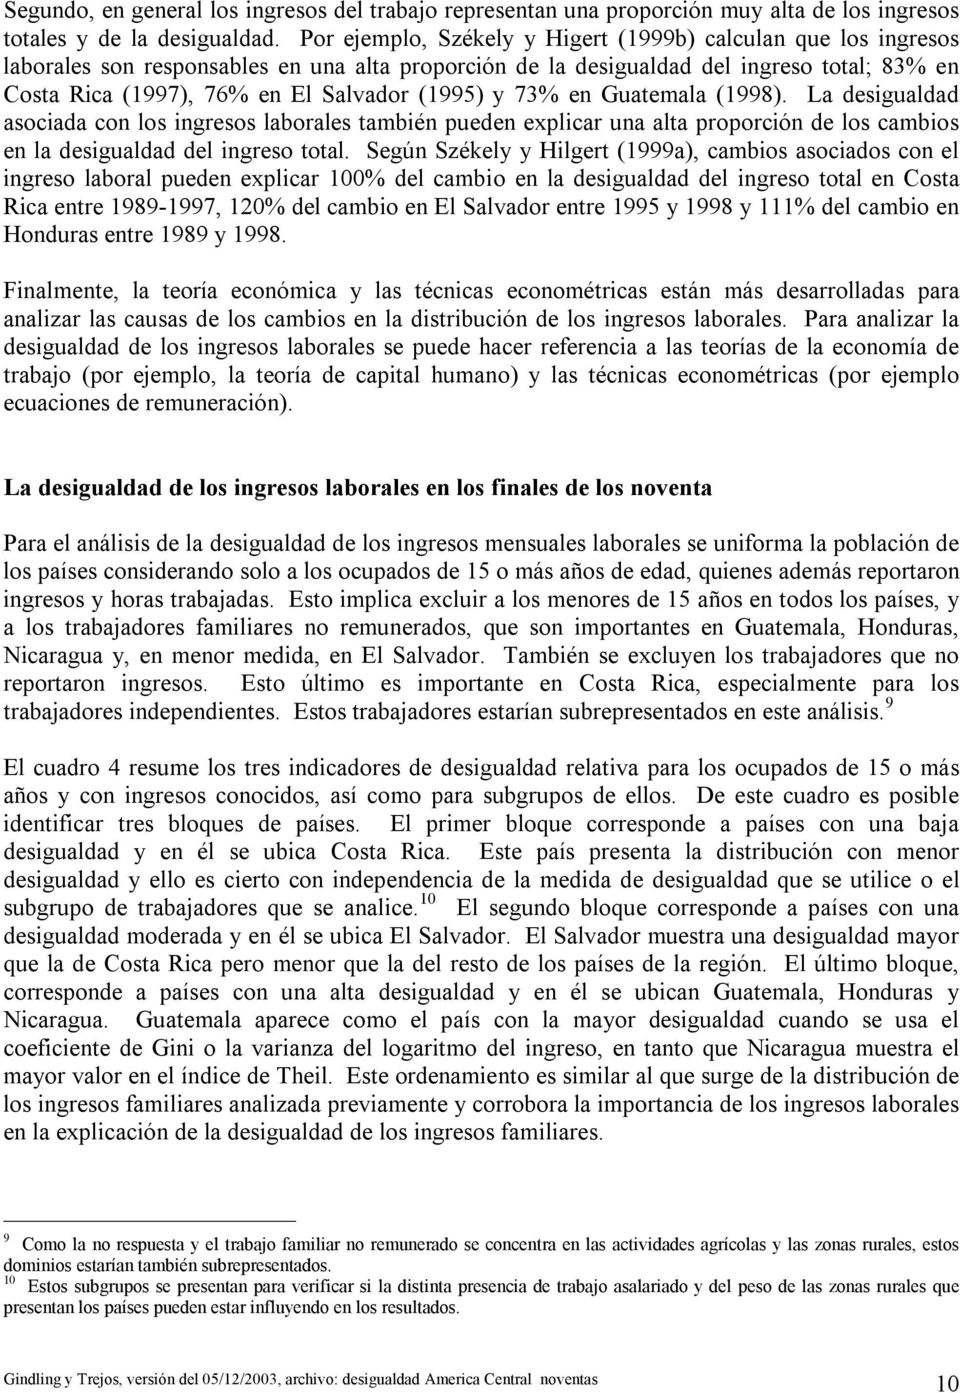 (1995) y 73% en Guatemala (1998). La desigualdad asociada con los ingresos laborales también pueden explicar una alta proporción de los cambios en la desigualdad del ingreso total.